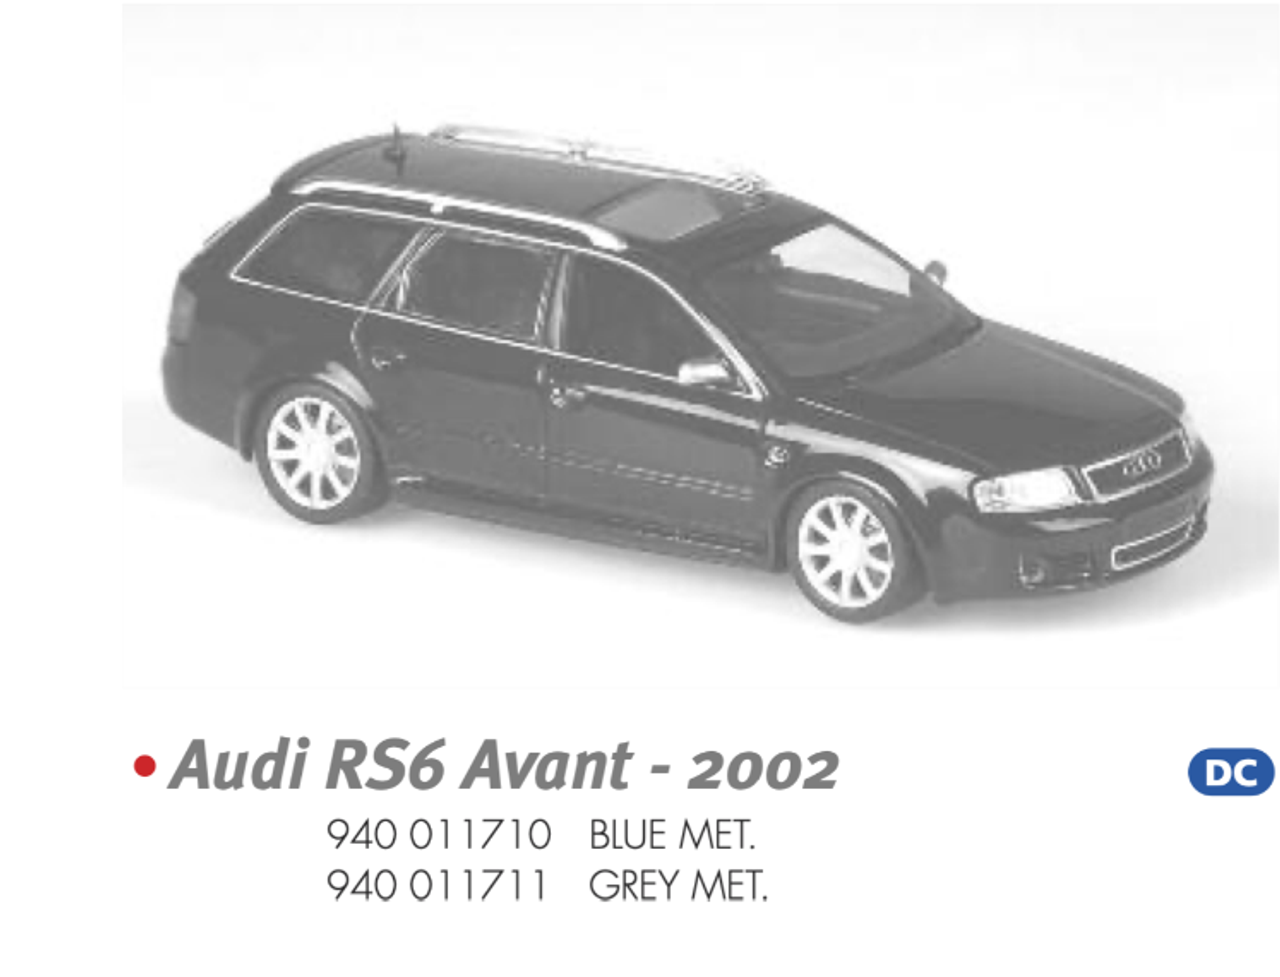 1/43 Minichamps AUDI RS6 AVANT - 2002 - BLUE MET. Diecast Car Model